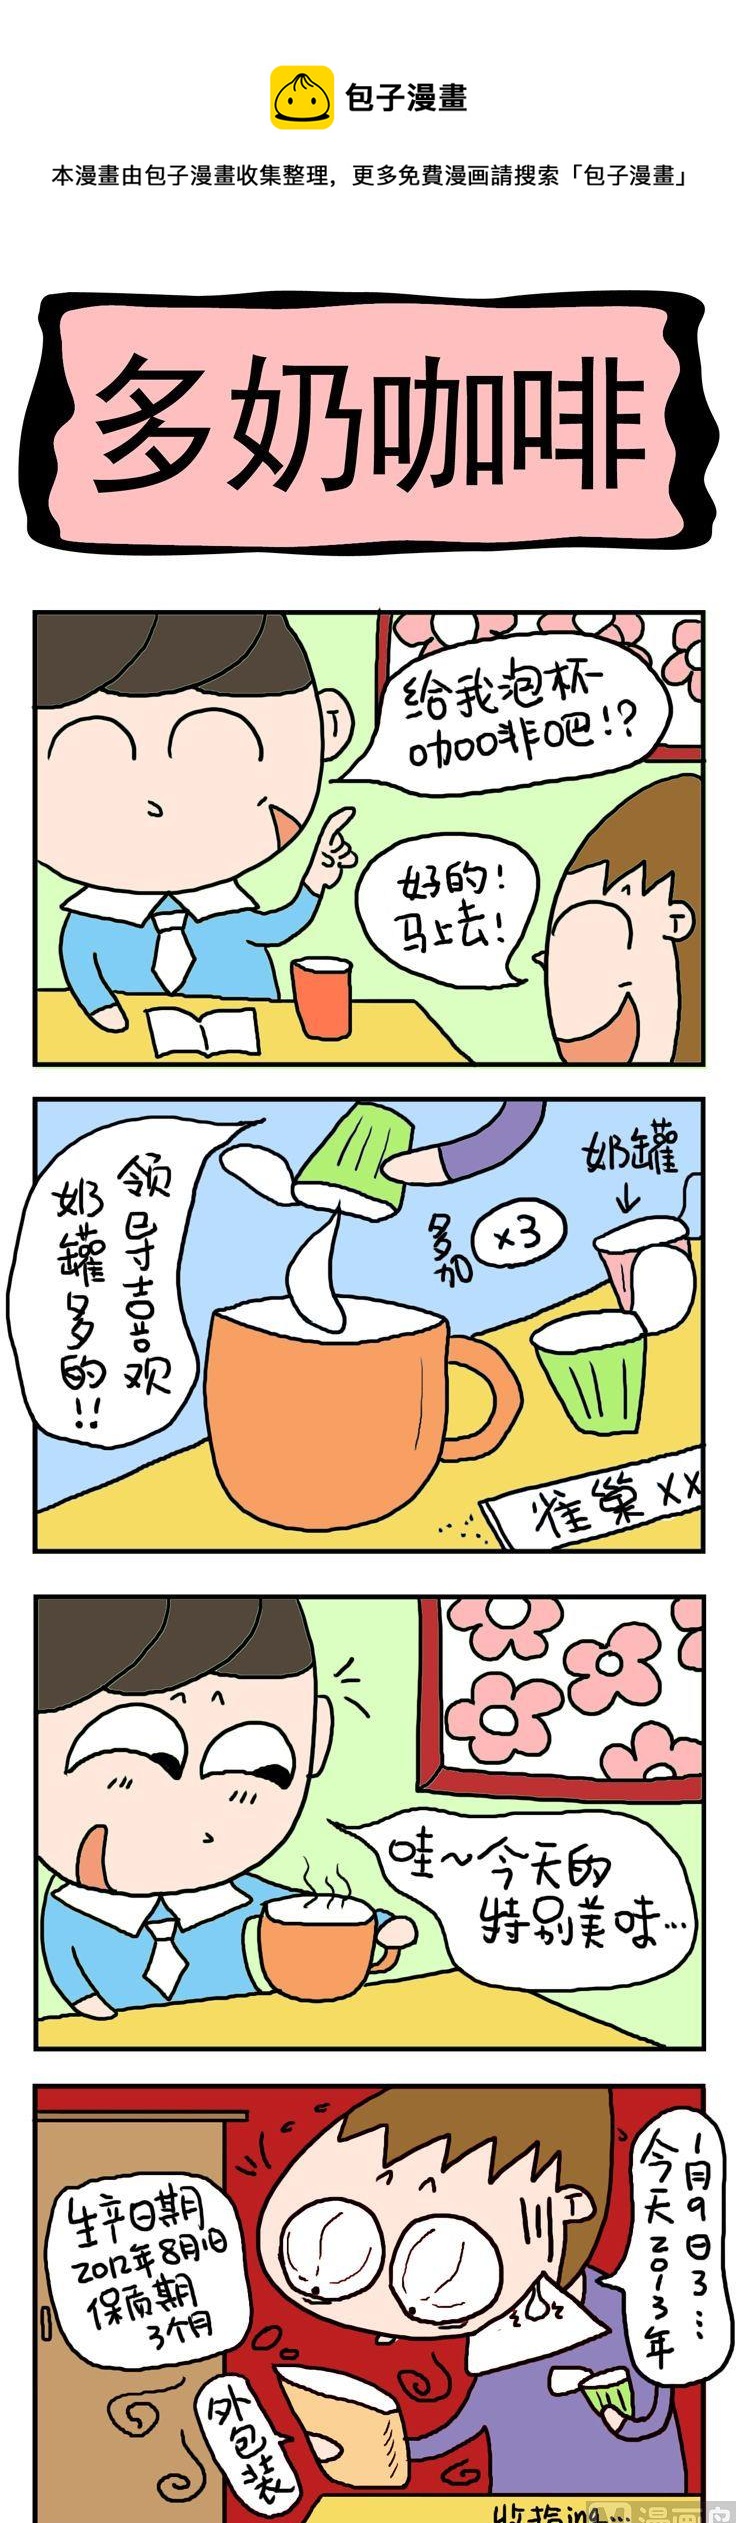 屌丝立志记 - 71.多奶咖啡 - 1